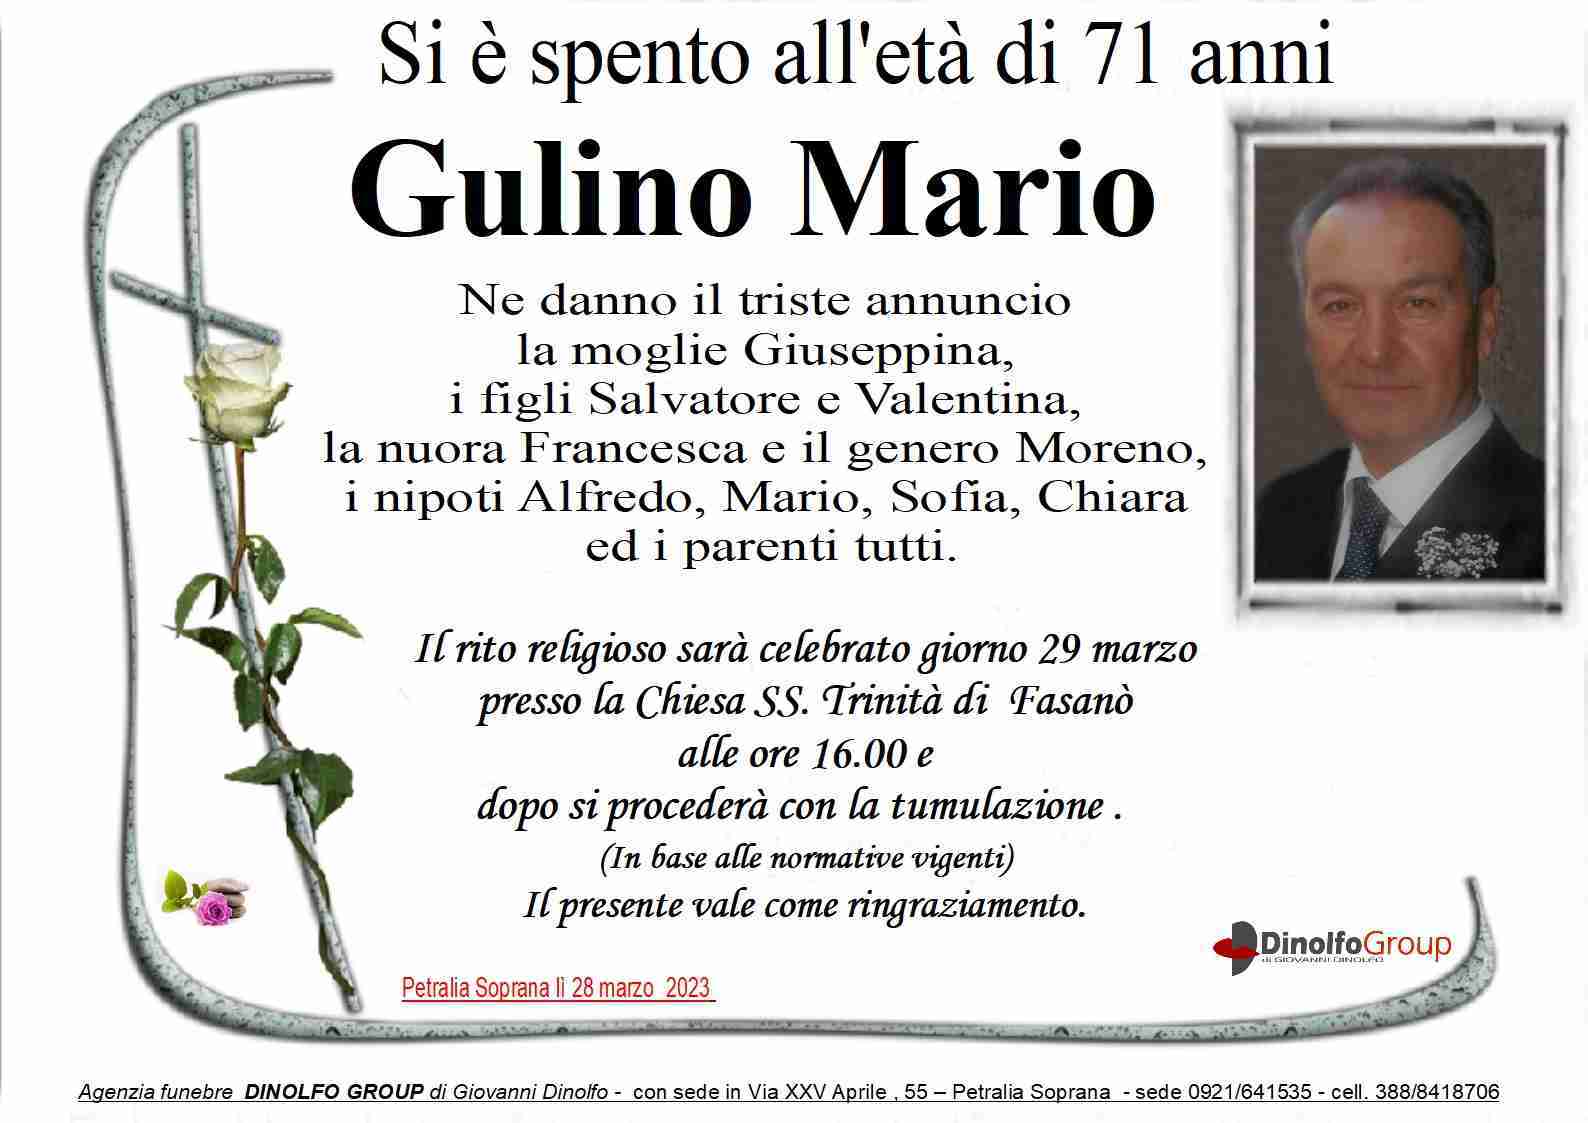 Mario Gulino